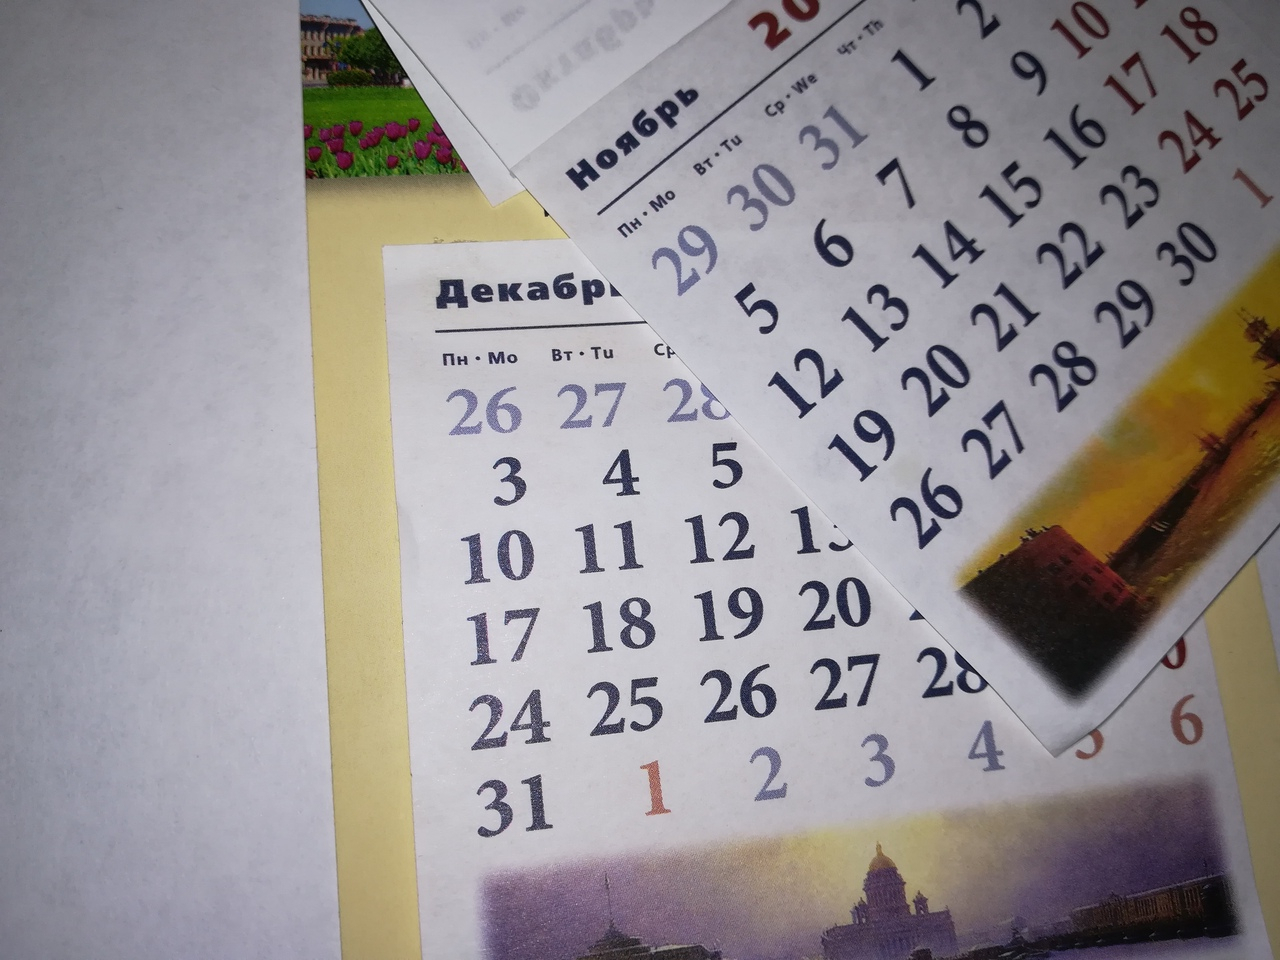 Как нижегородцы отдыхают в 2019 году: календарь выходных и праздничных дней